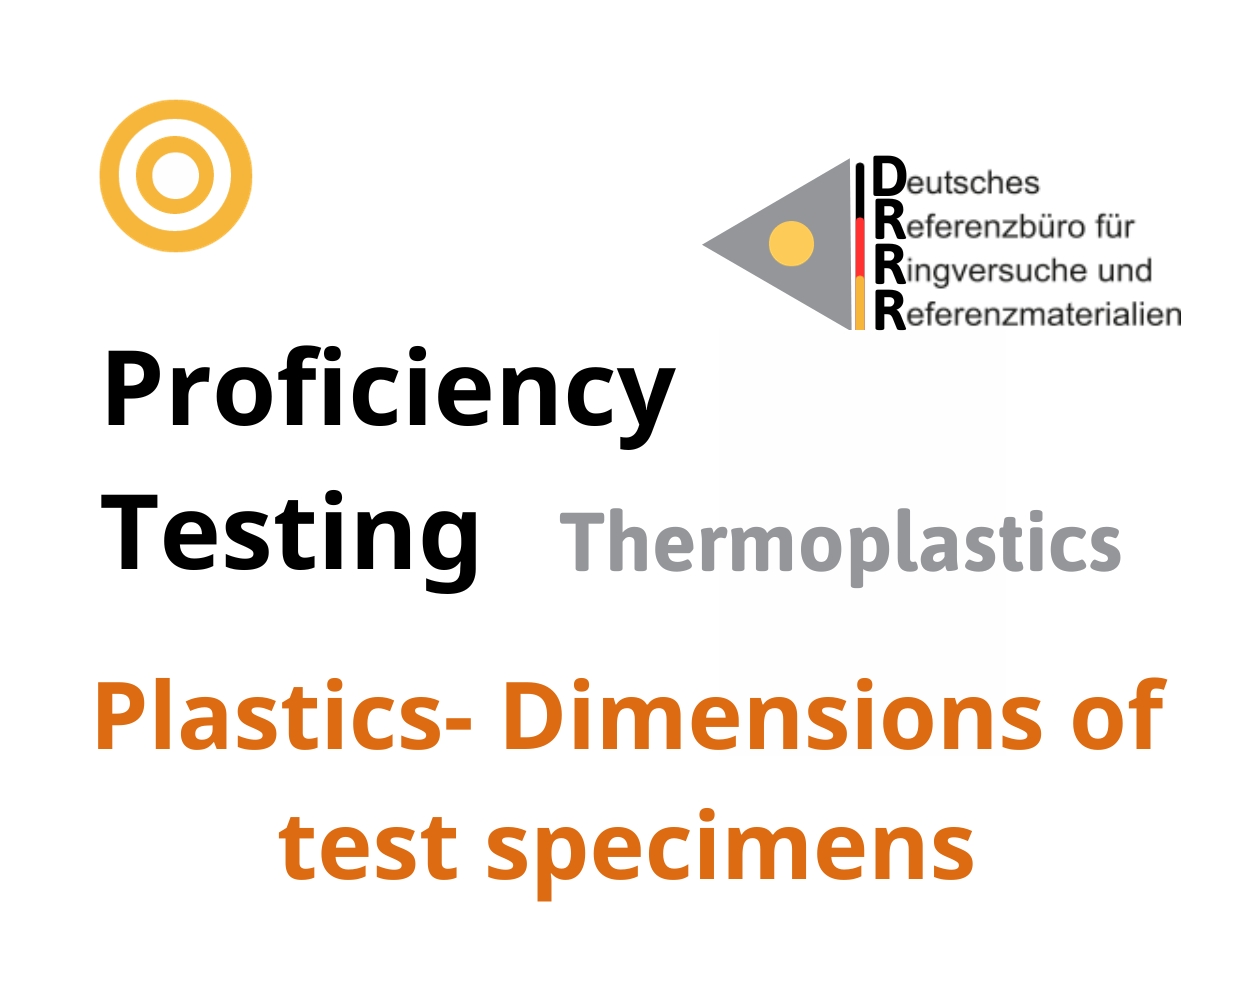 Thử nghiệm thành thạo (ISO 17043)  nhựa nhiệt dẻo trên nền mẫu Plastics - Dimensions of test specimens, Hãng DRRR, Đức